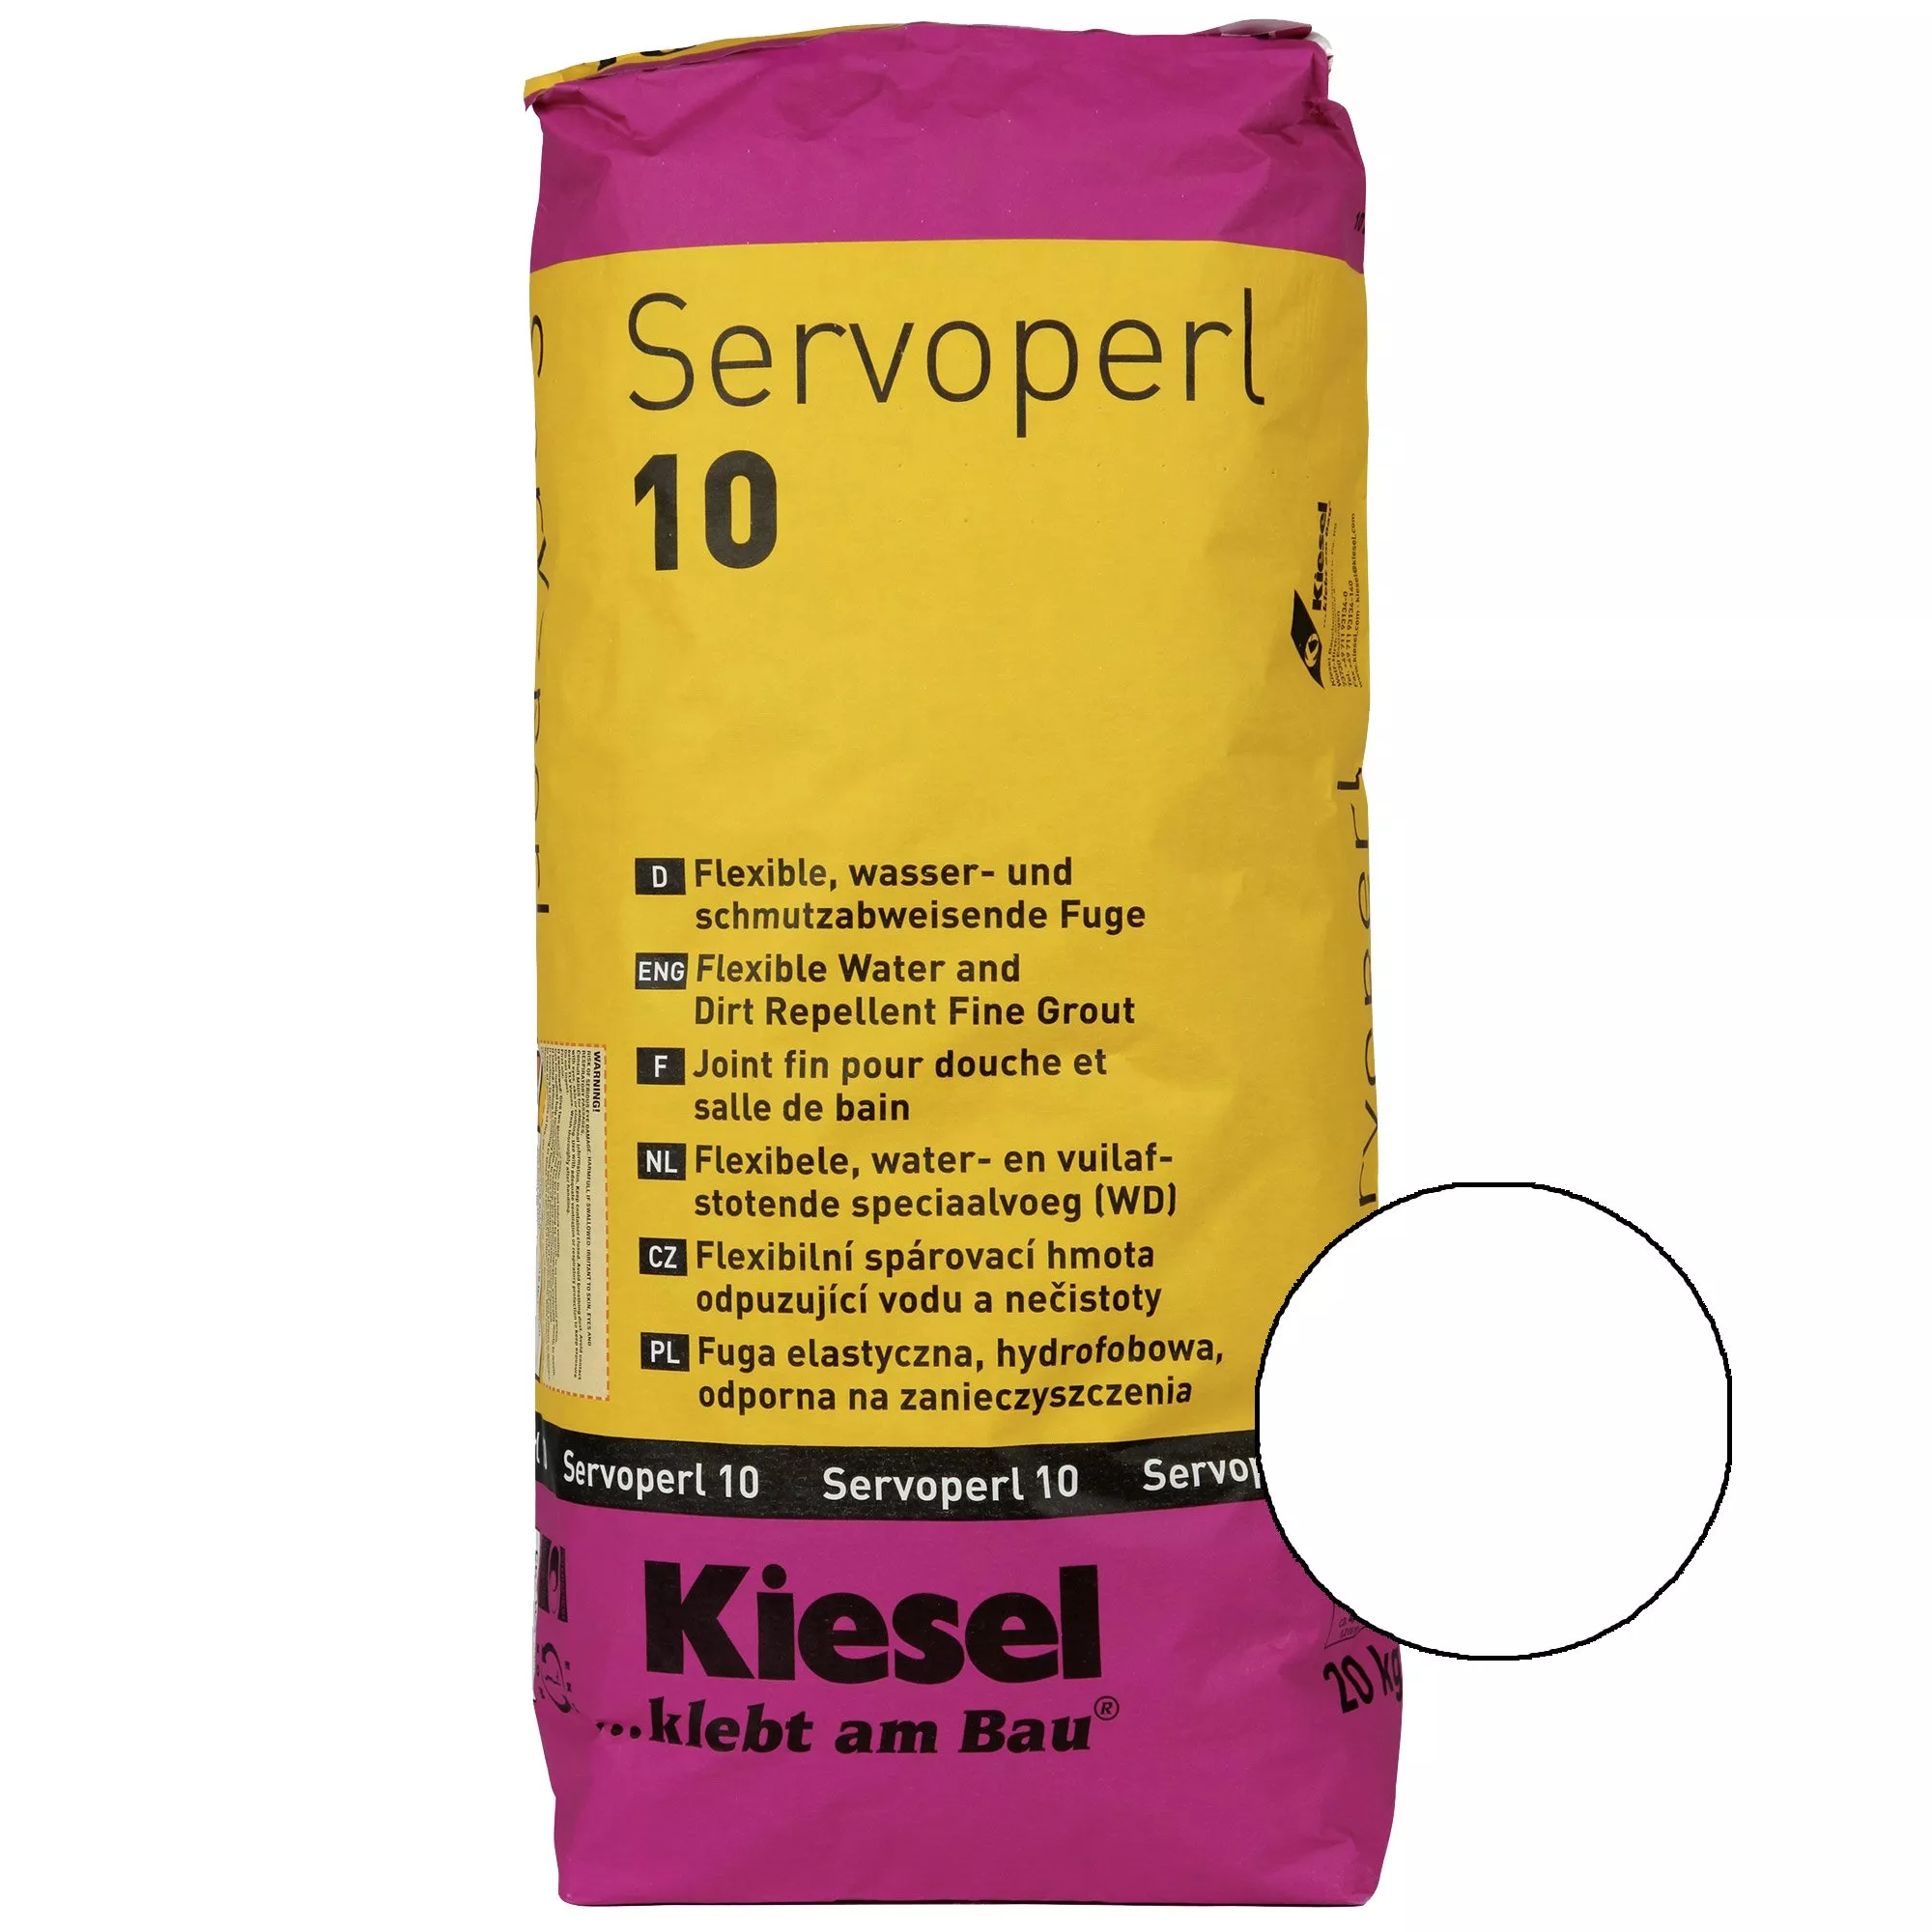 Kiesel Servoperl 10 - Flexible zementäre Fuge (20KG Edelweiss)